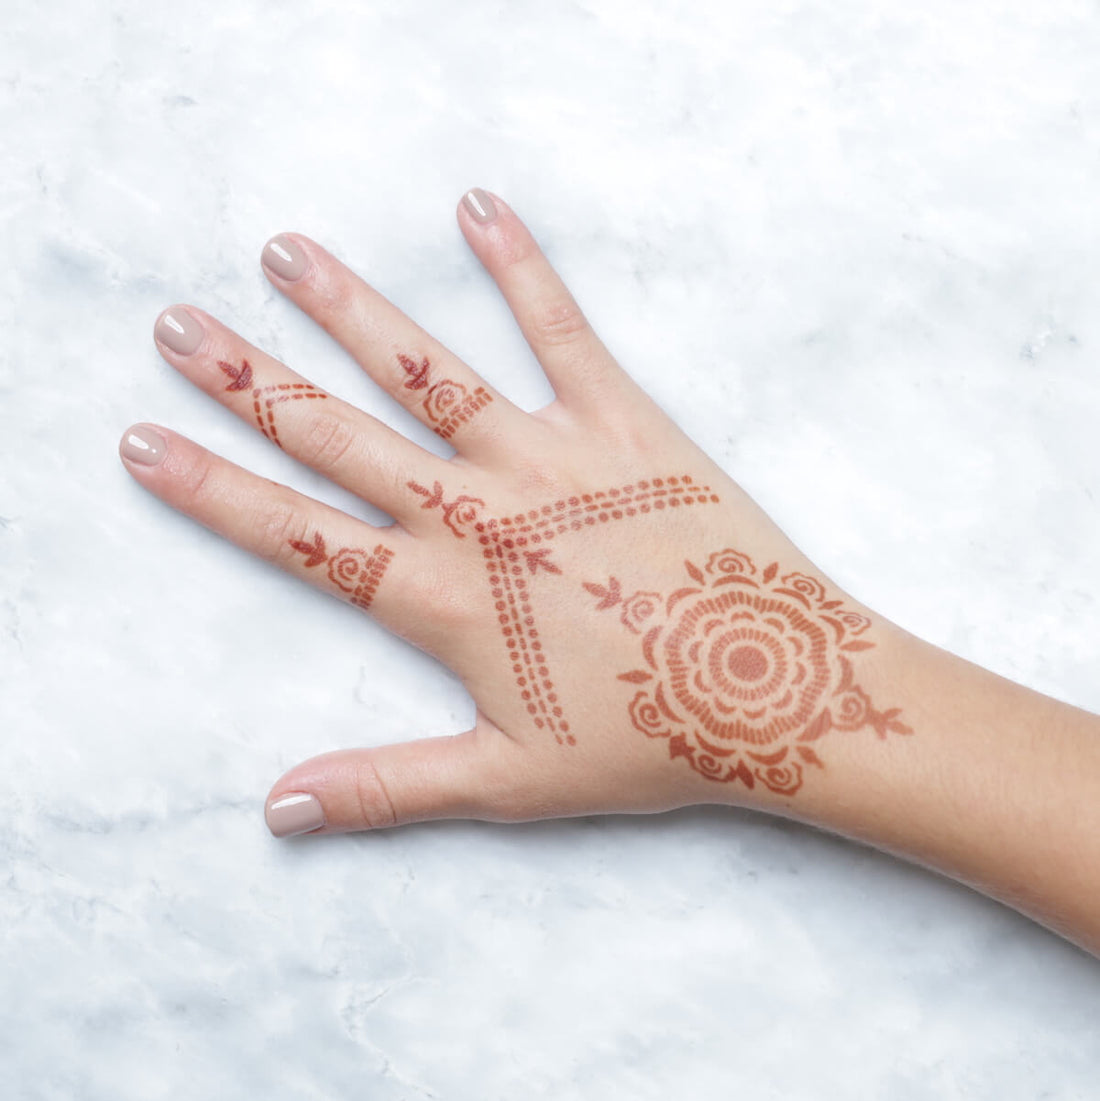 Pre-made Henna Body Art Kit for Kids